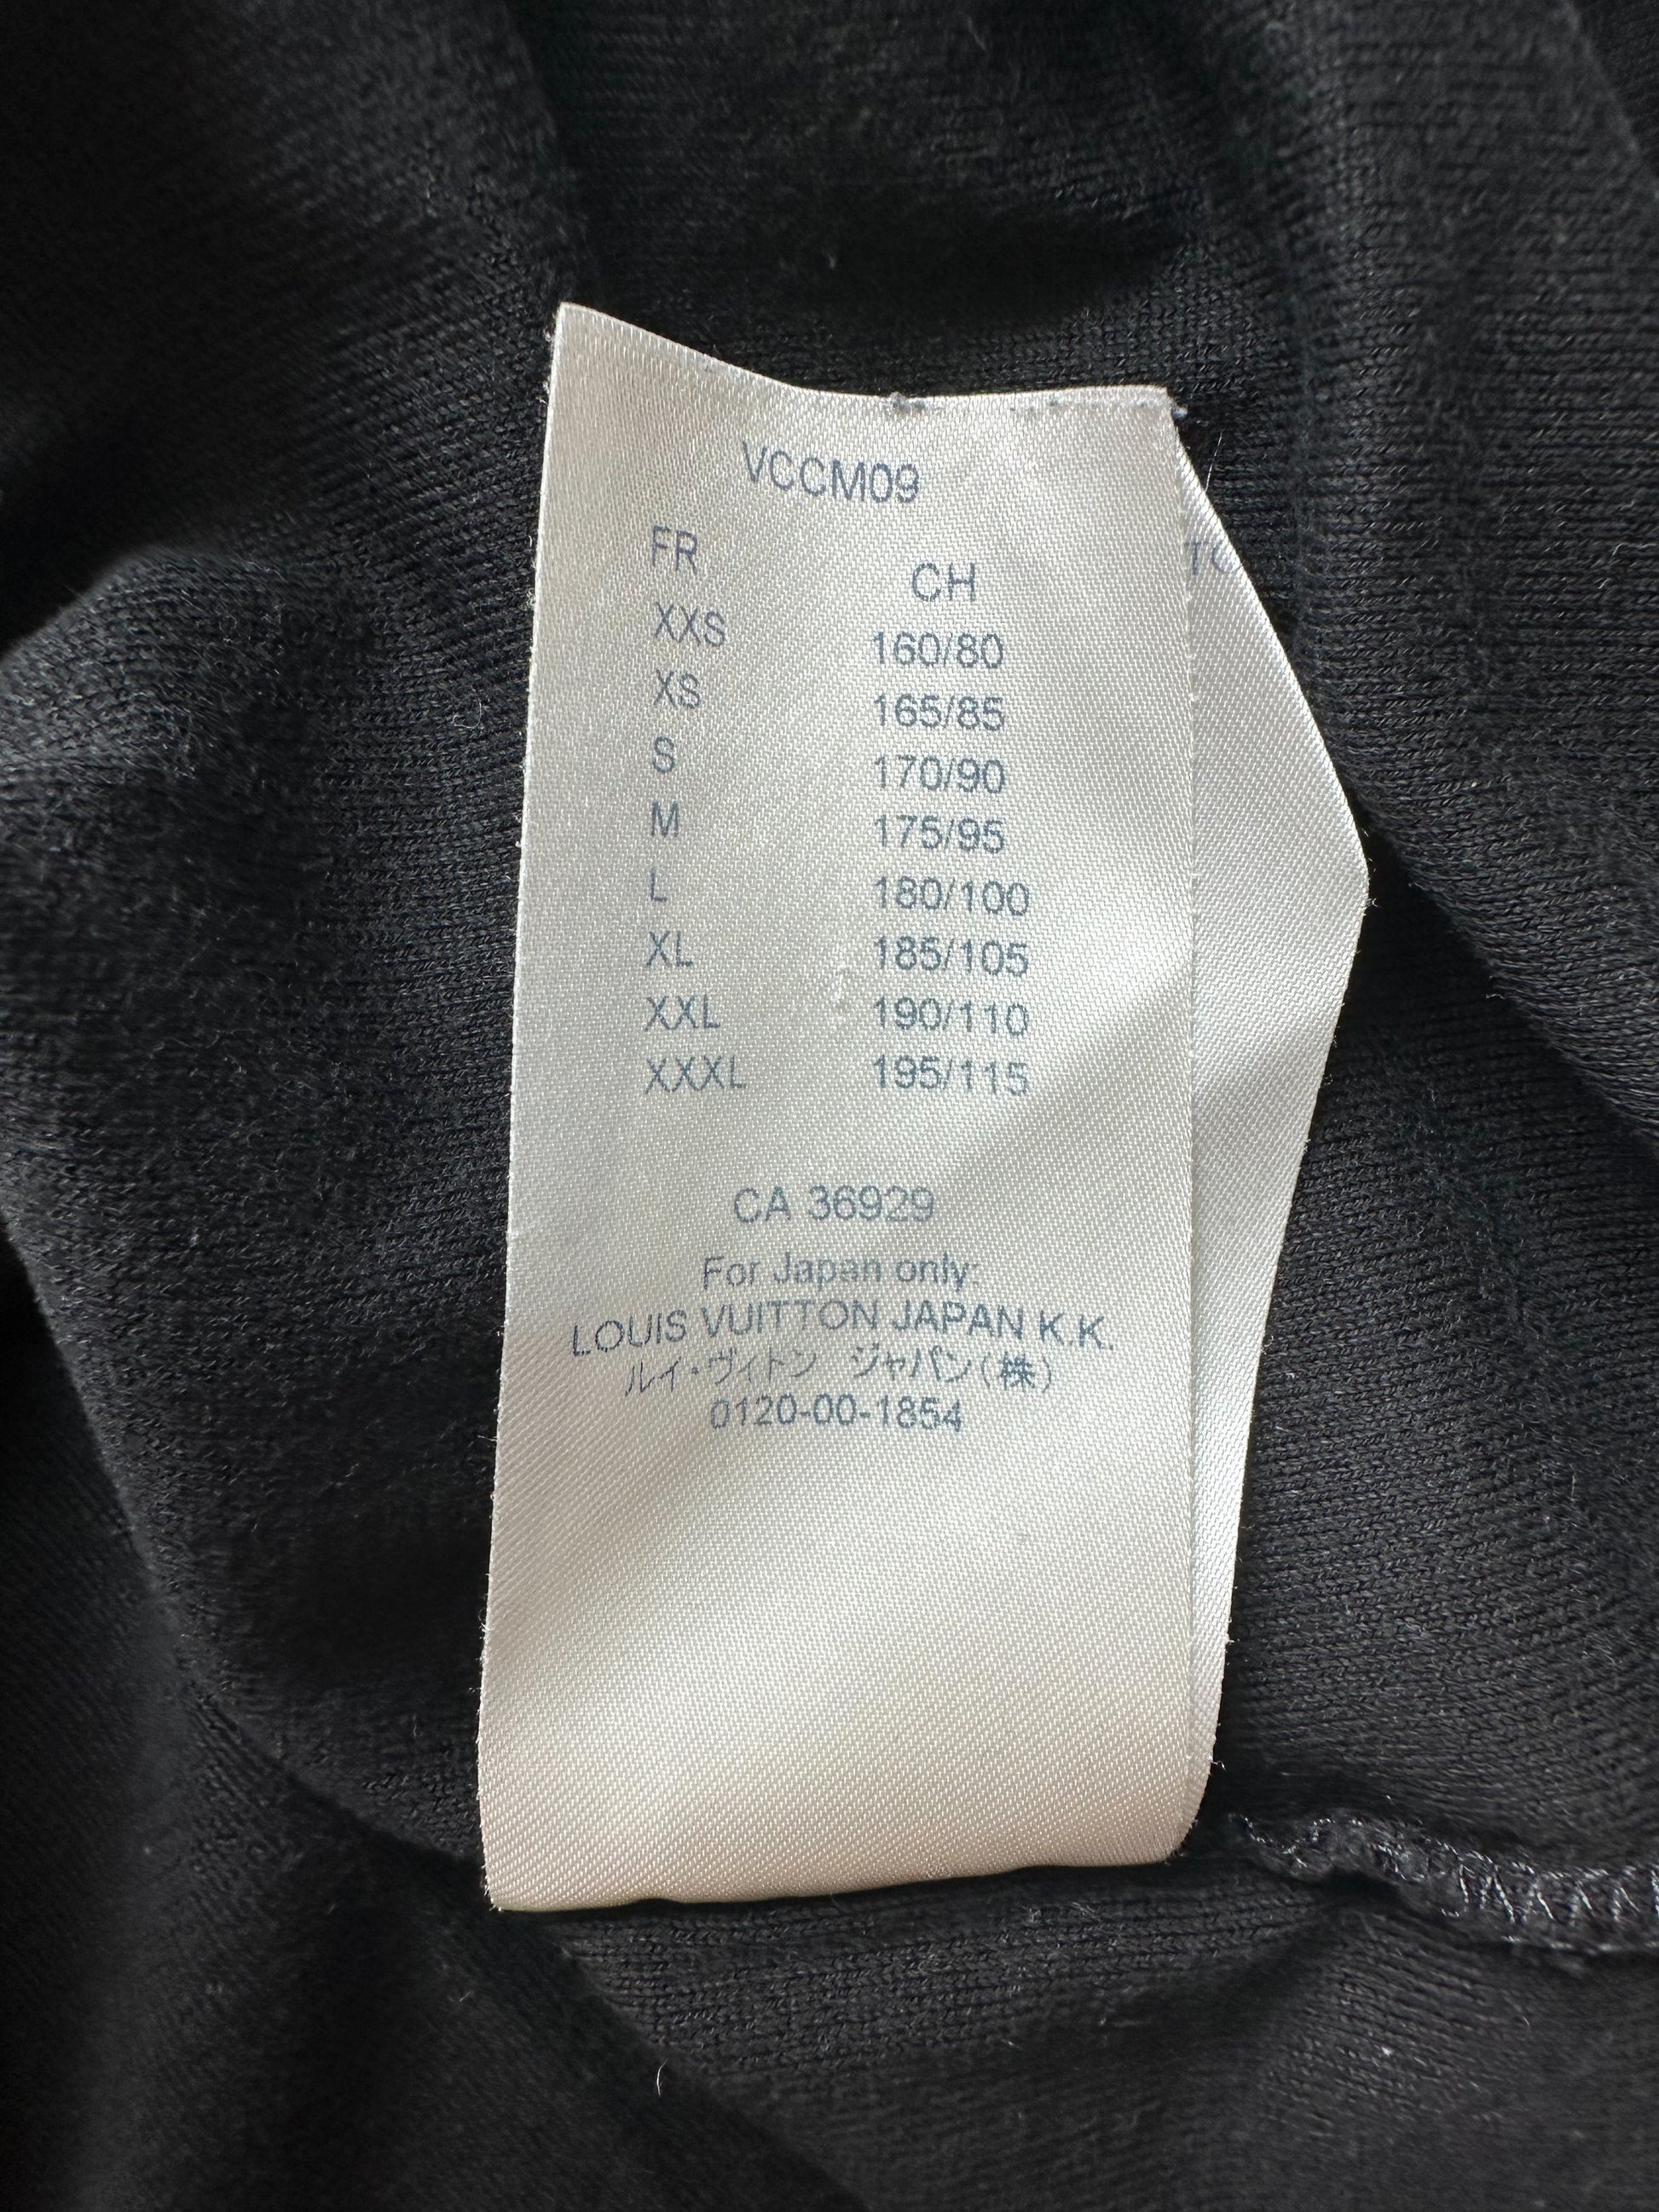 Louis Vuitton Black Space Applique Logo T-Shirt – Savonches